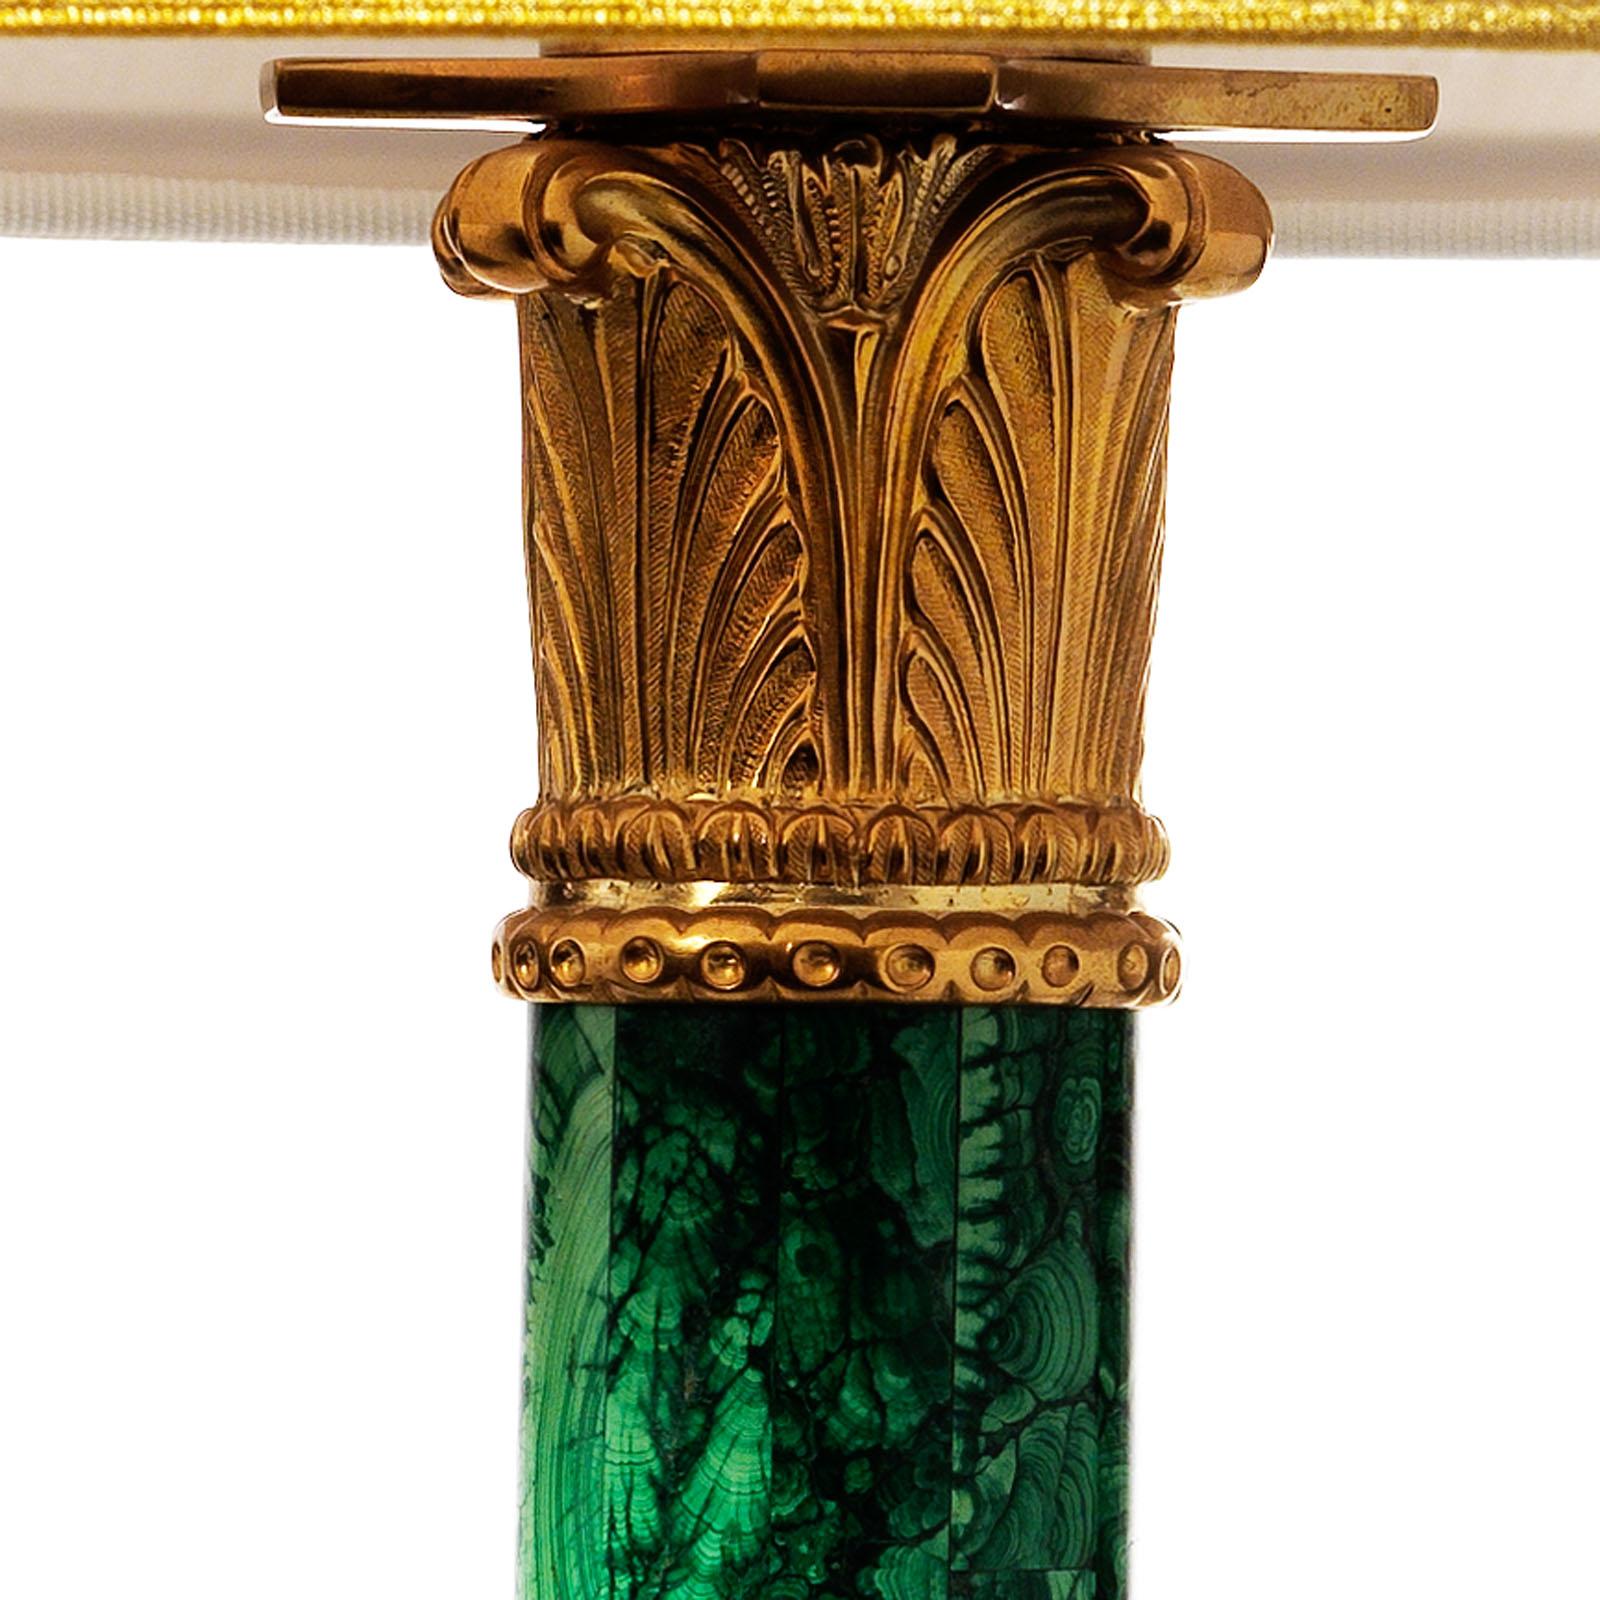 Lampe de table à colonne de style Louis XVI en malachite et bronze doré par Gherardo Degli Albizzi.
Cette lampe présente un design très raffiné caractérisé par un chapiteau à motif végétal classique et des masques inscrits dans des festons végétaux.